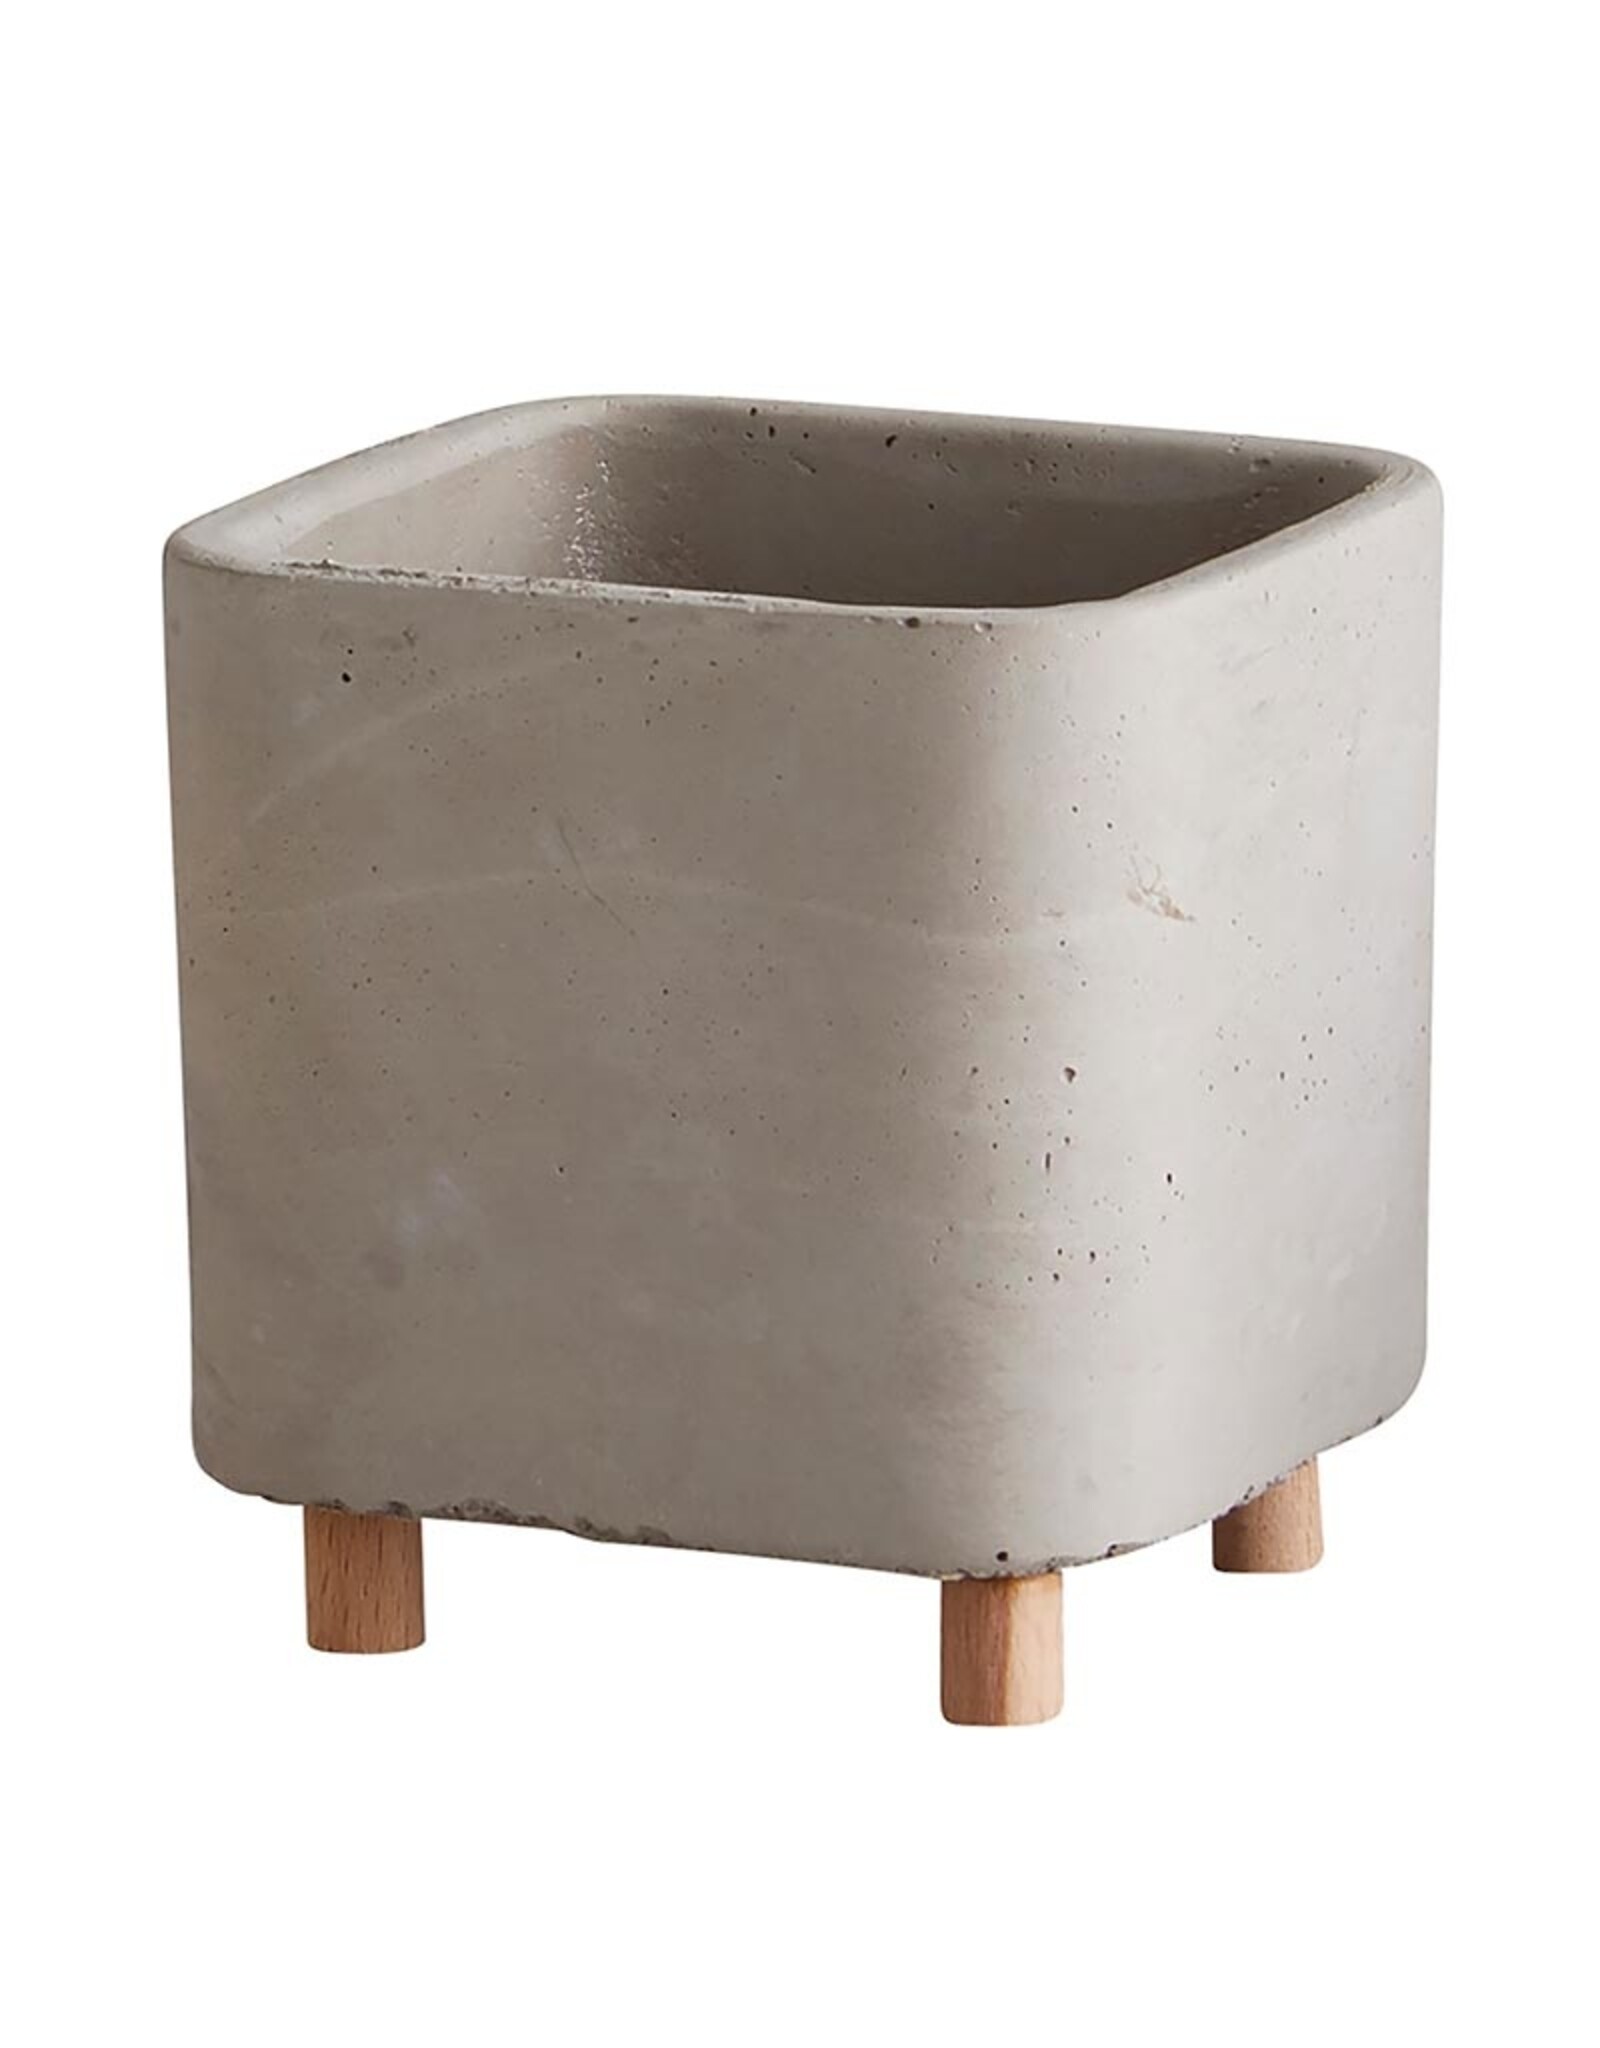 Santa Barbara Design Studio Square pot with legs - medium